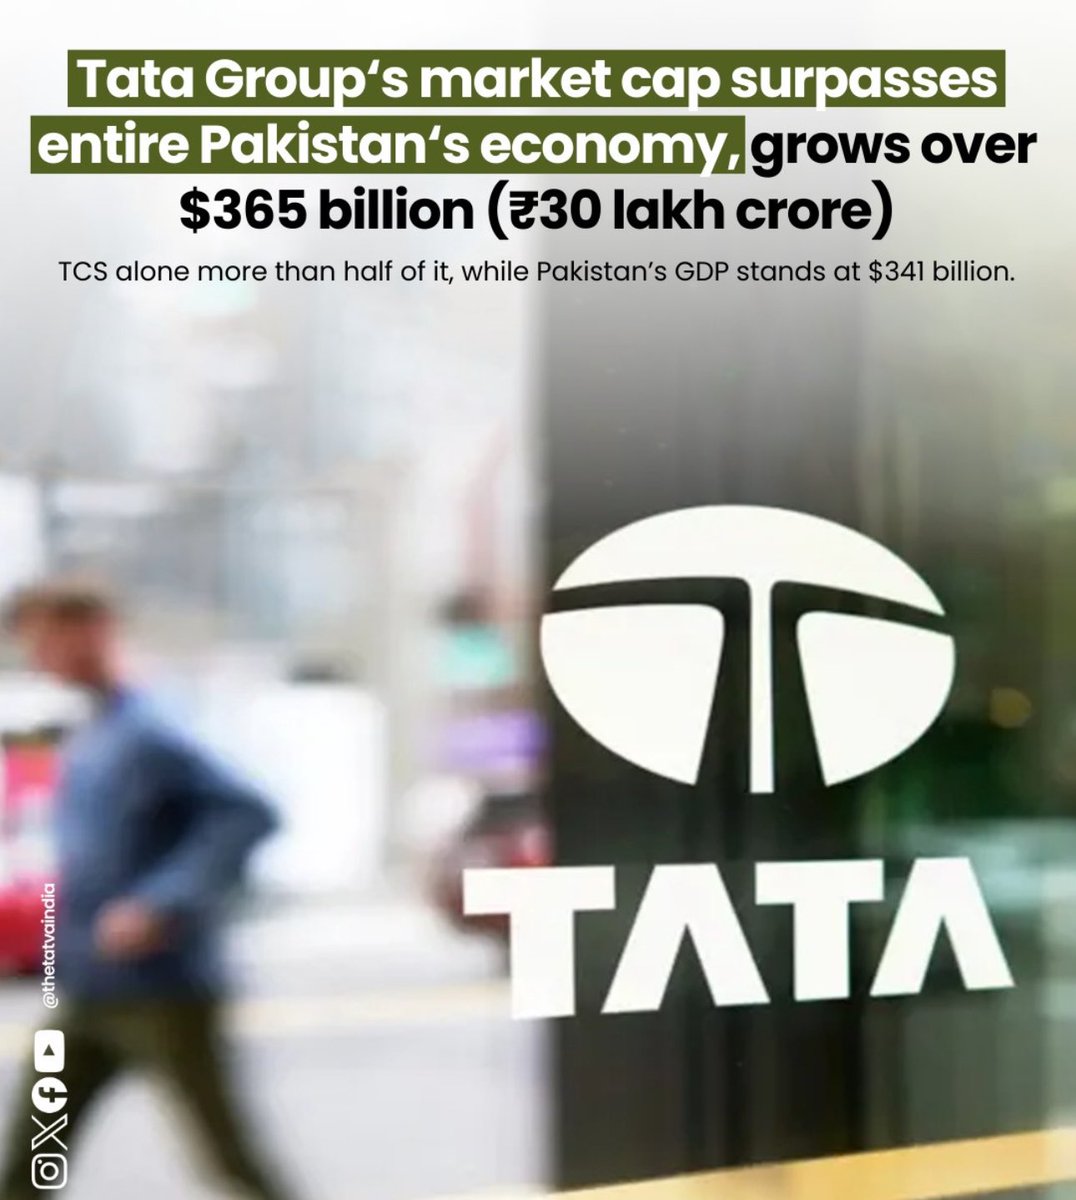 Proud on you Tata Group 🇮🇳
@TataCompanies
#TataGroup #RatanTata